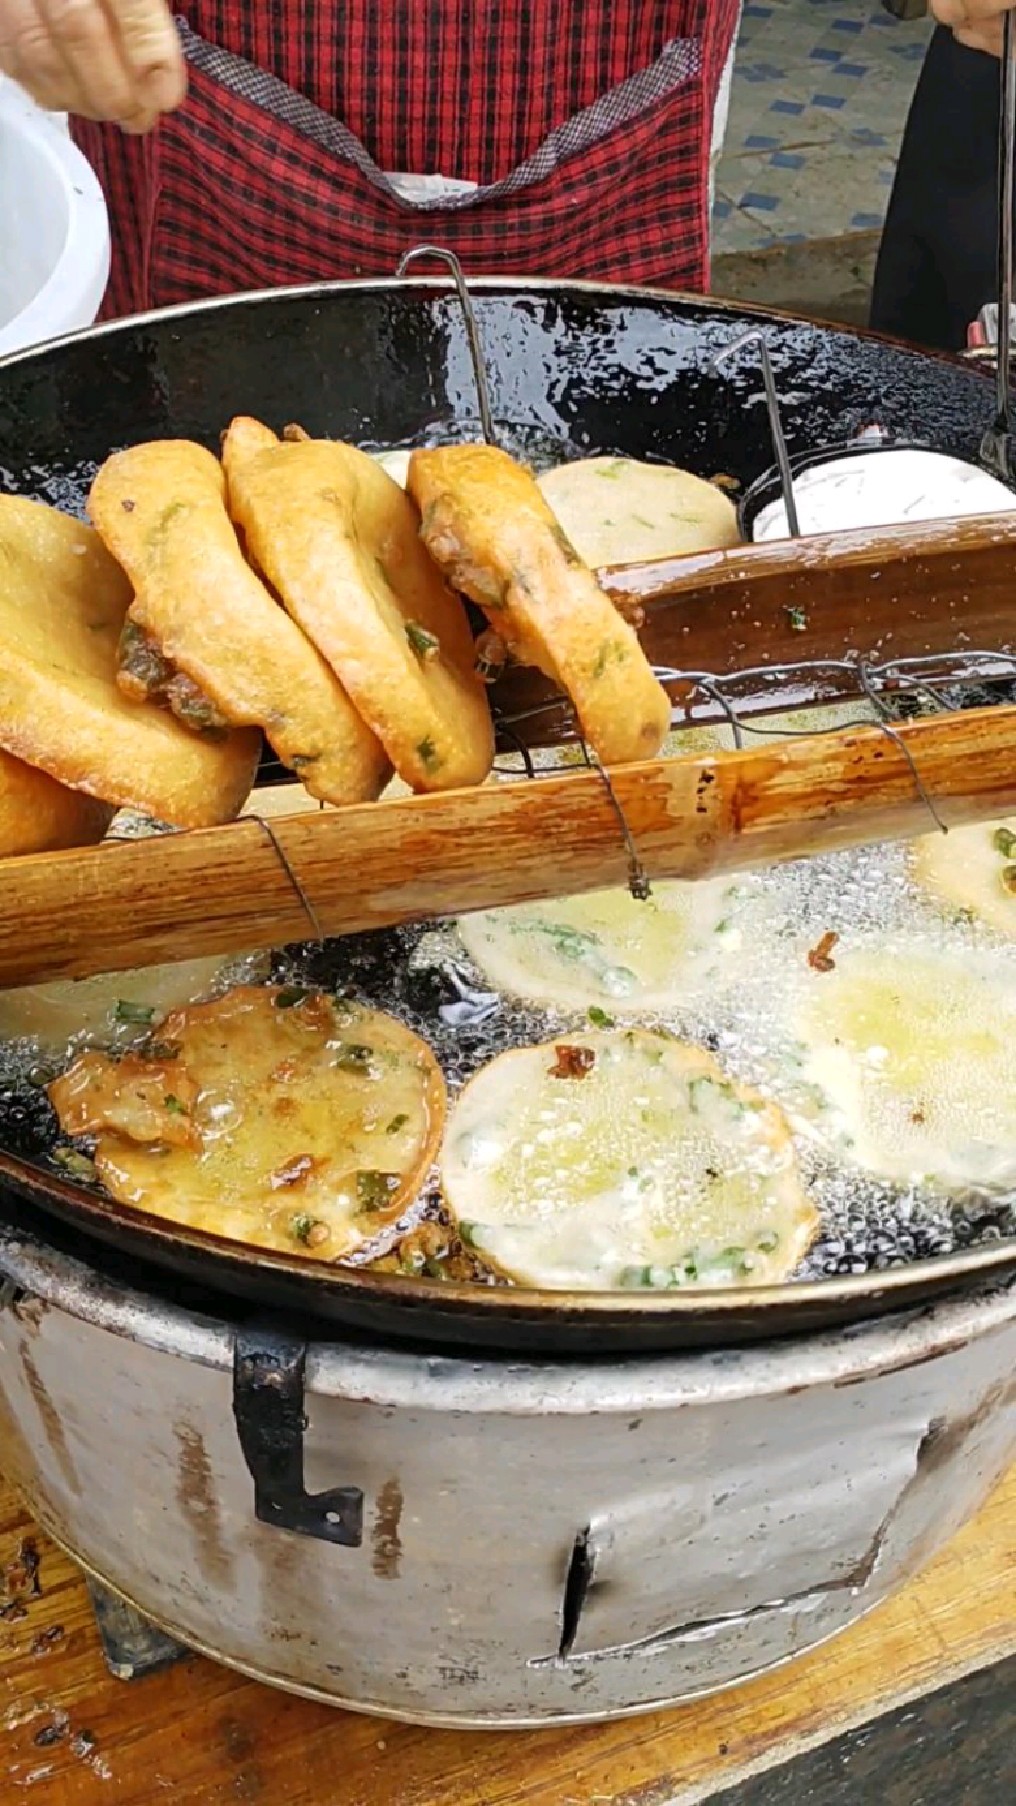 广东河源和平客家人的特色美食一铁勺粄,吃起来特别香,每一口都是满满